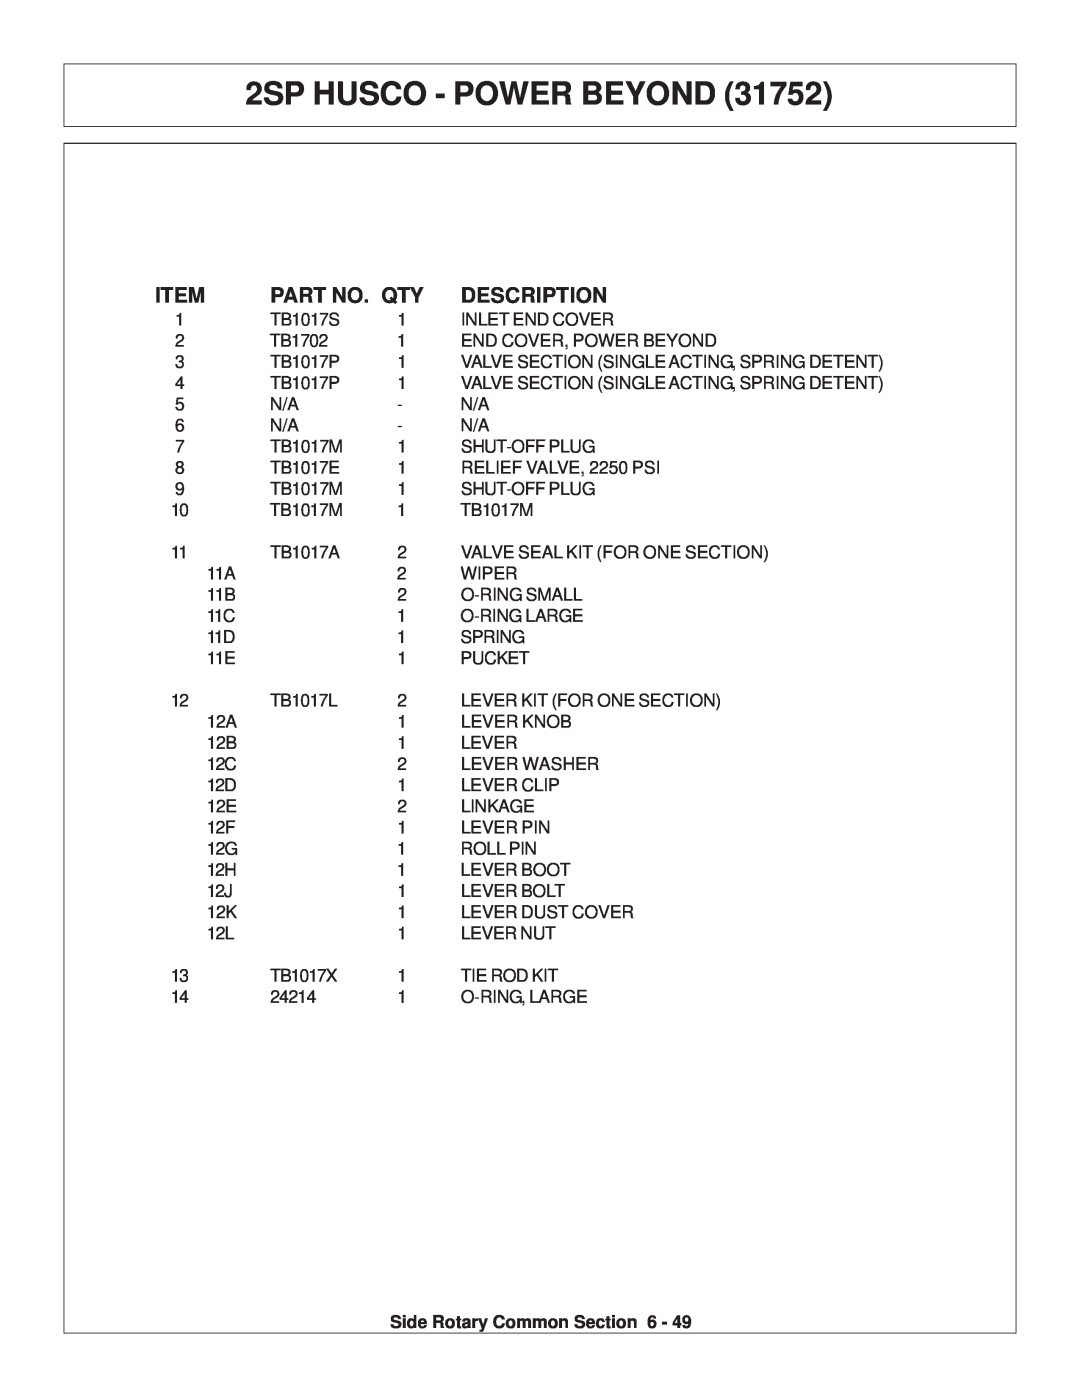 Tiger Products Co., Ltd TS 100A manual 2SP HUSCO - POWER BEYOND, Part No. Qty, Description 